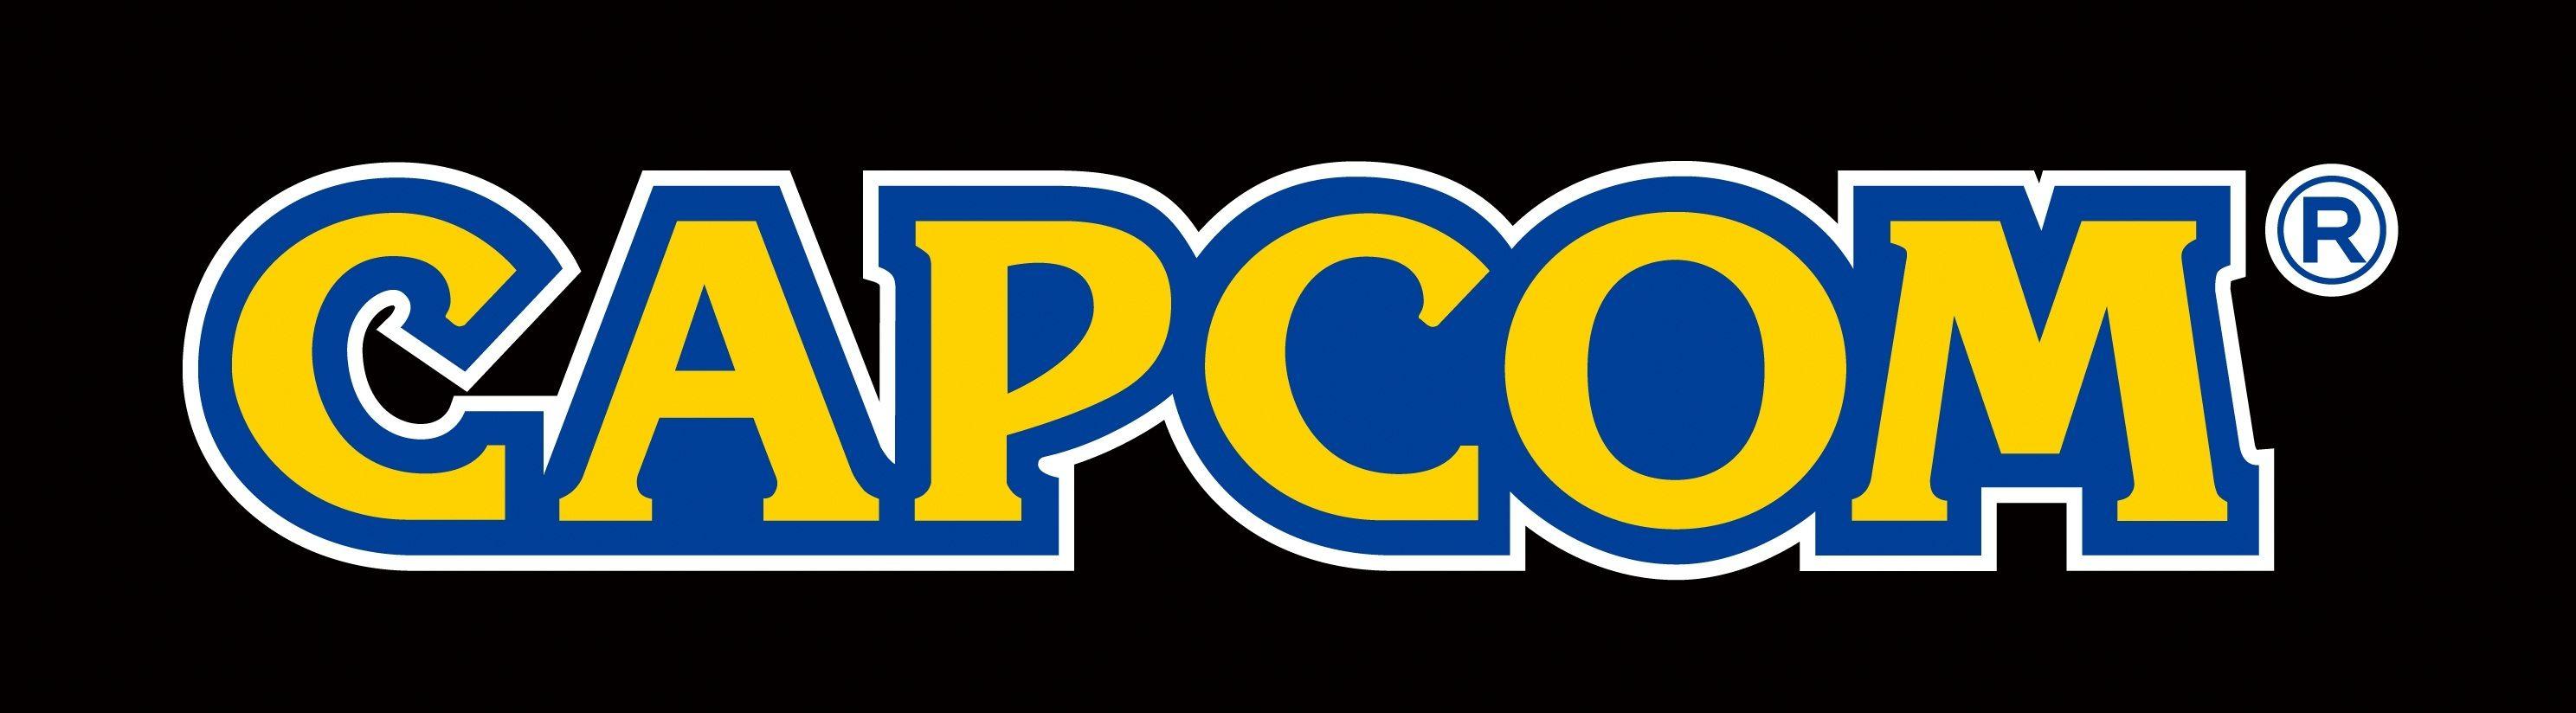 Capcom Logo - Capcom Logo Wallpaper HD